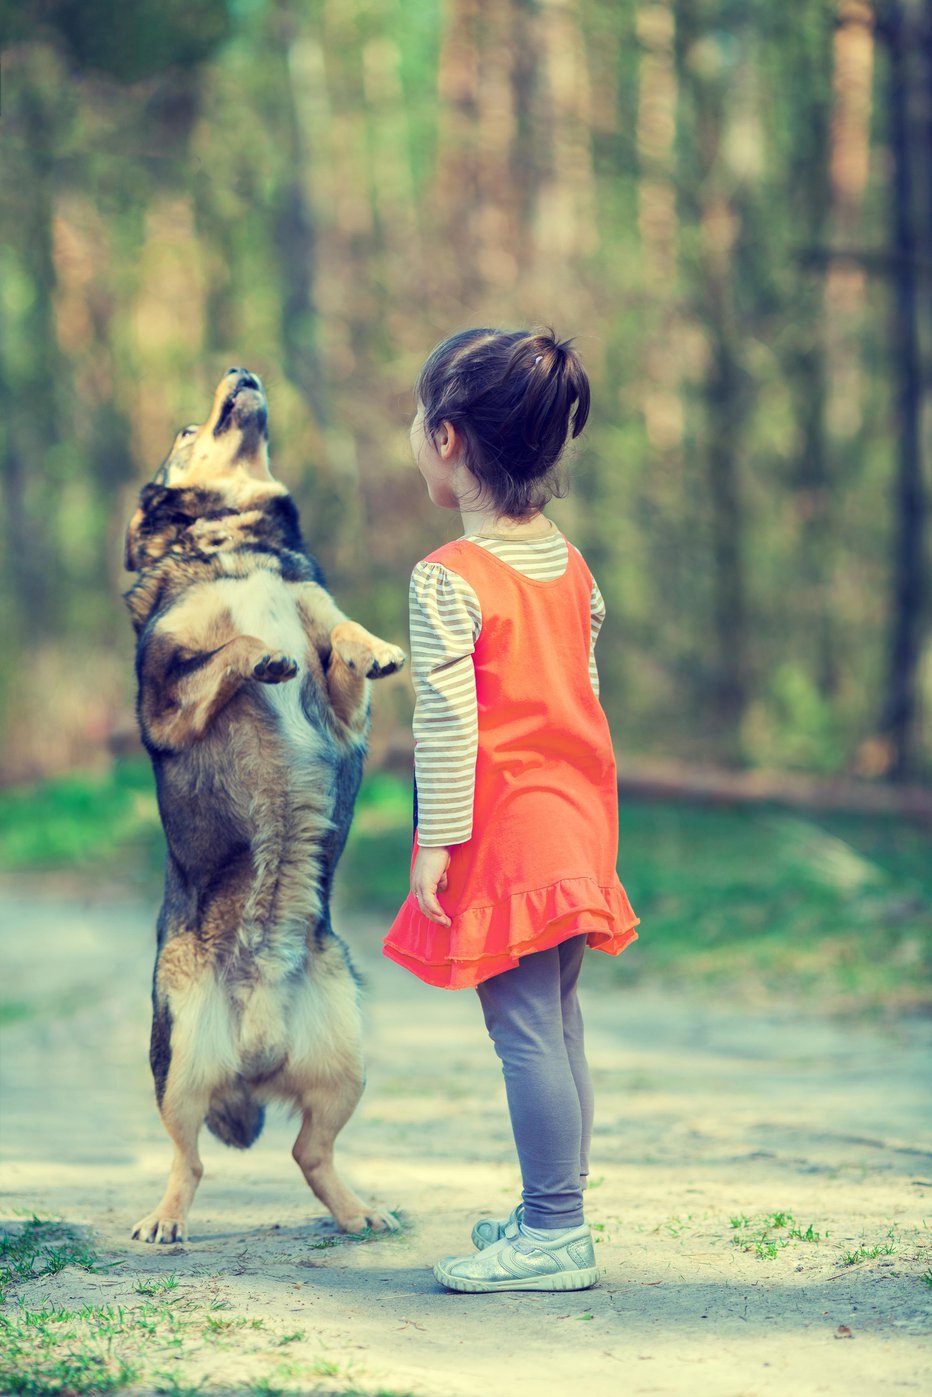 Fotografija: Če otroci še ne morejo sodelovati v tečaju, lahko psa pod vodstvom staršev doma učijo različne trikce. Foto: Guliver/Getty Images